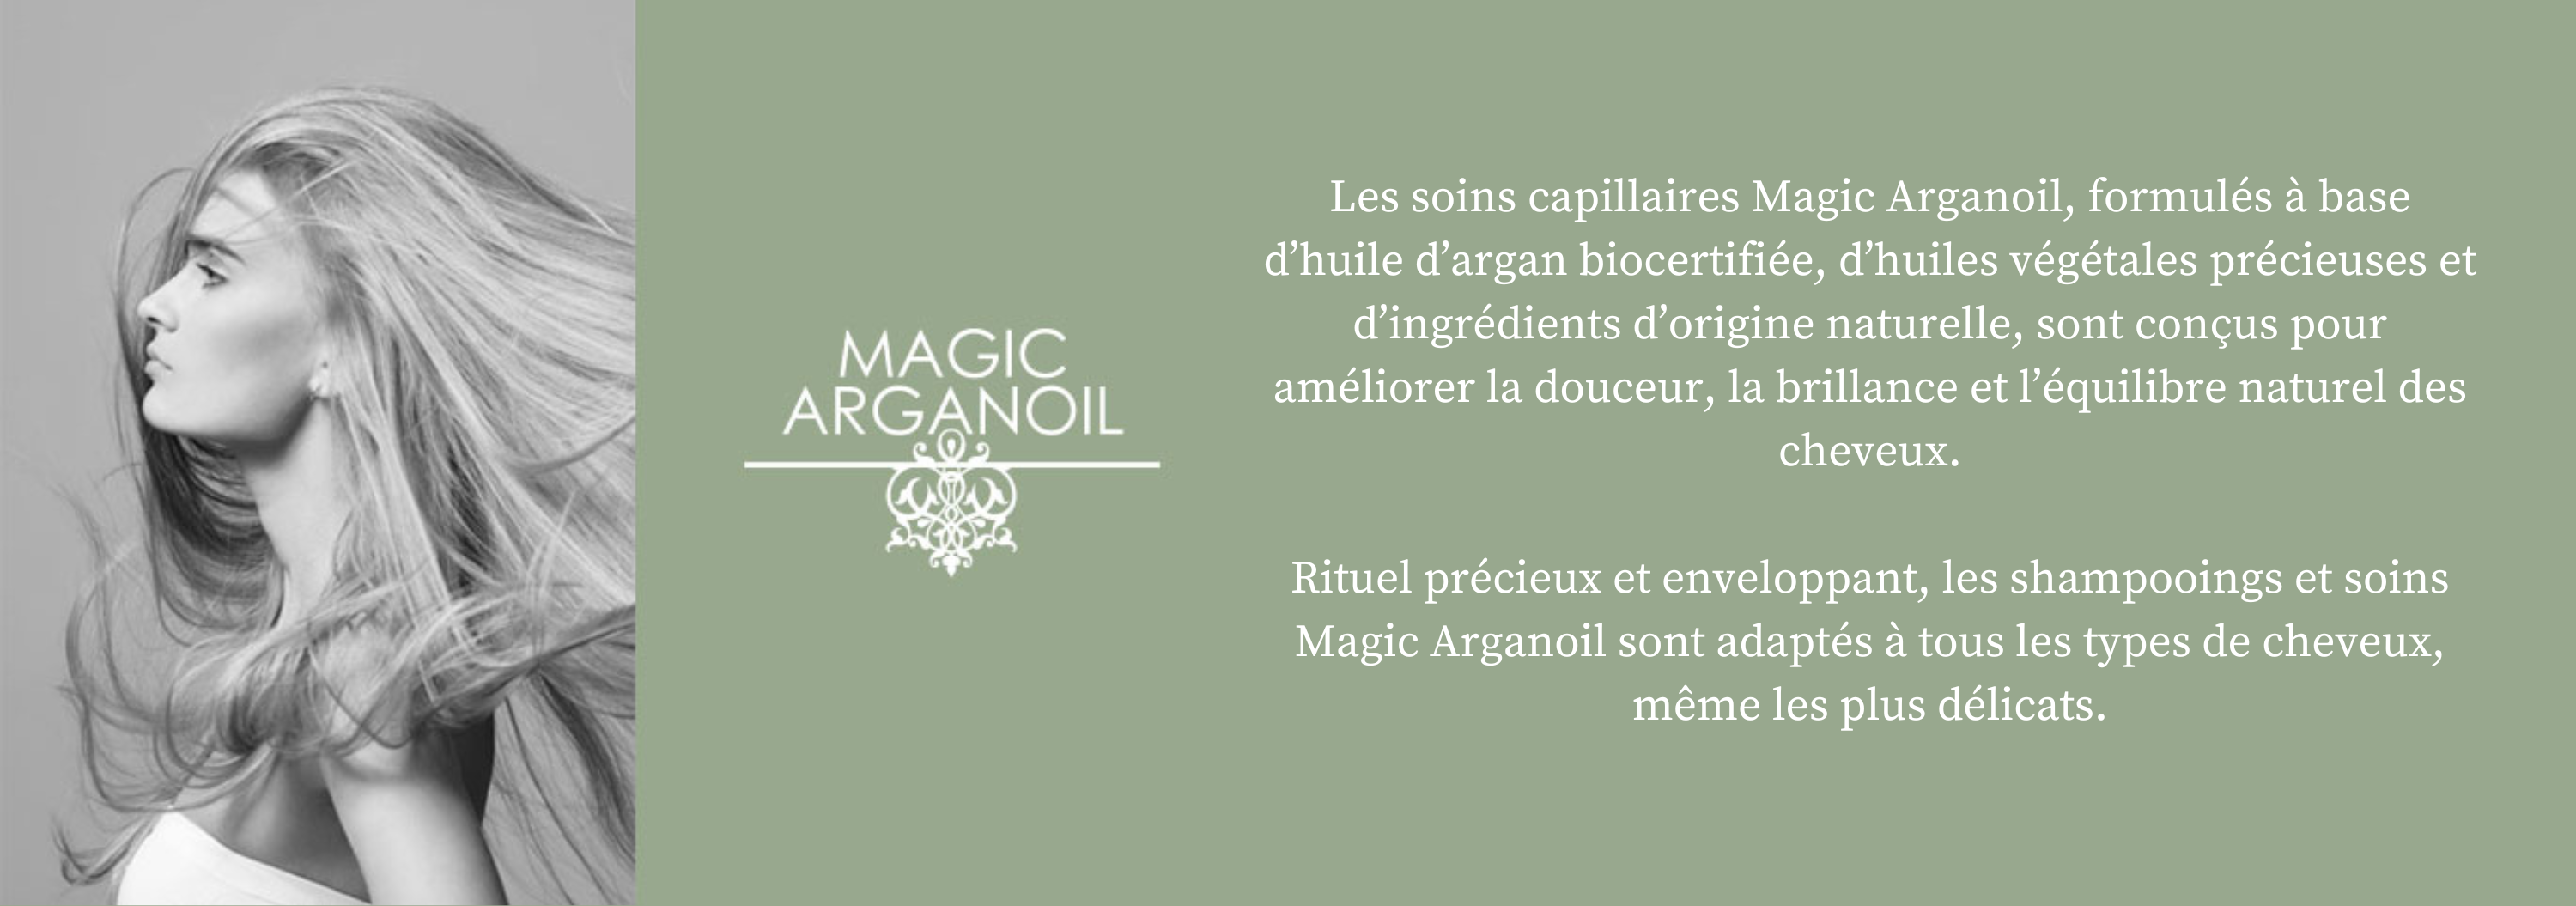 Magic Arganoil